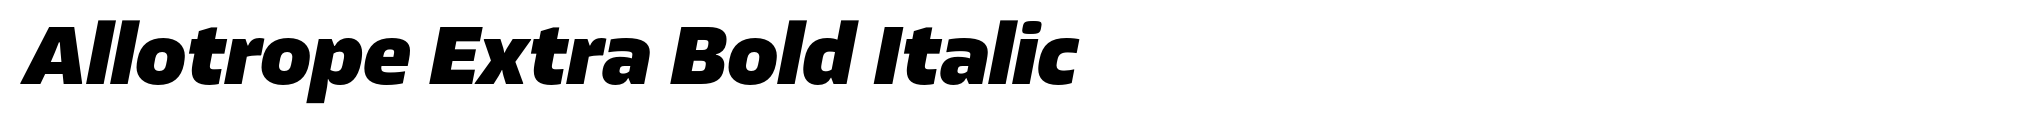 Allotrope Extra Bold Italic image